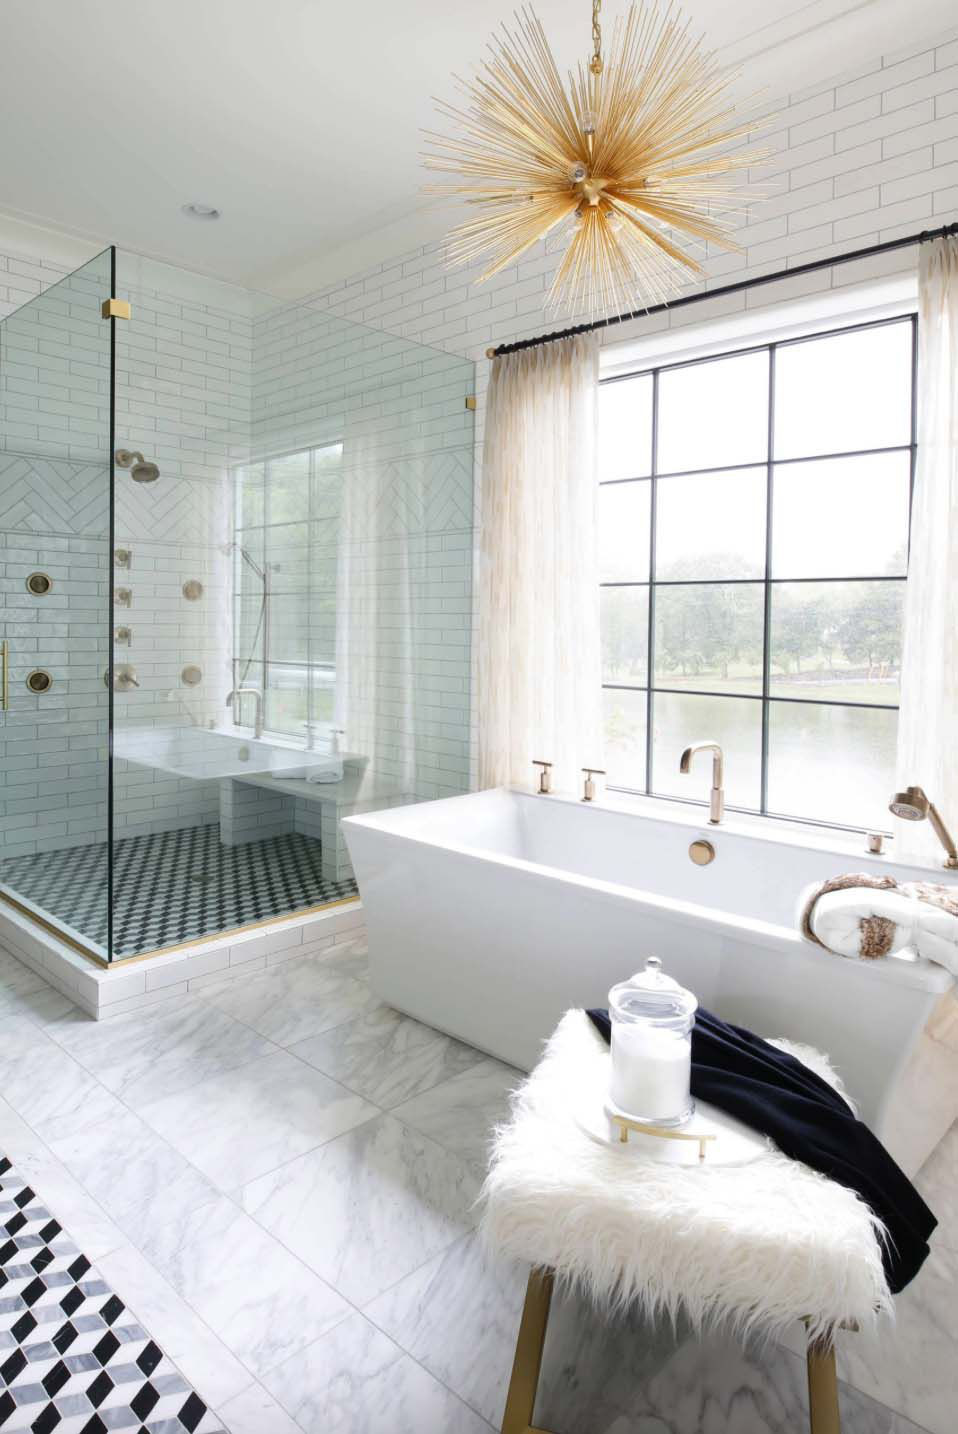  Một không gian phòng tắm theo phong cách giao thoa tuyệt đẹp với bồn tắm hấp dẫn, đèn chùm tỏa nắng, ghế đẩu chùm lông thú và gạch khảm họa tiết hình học.